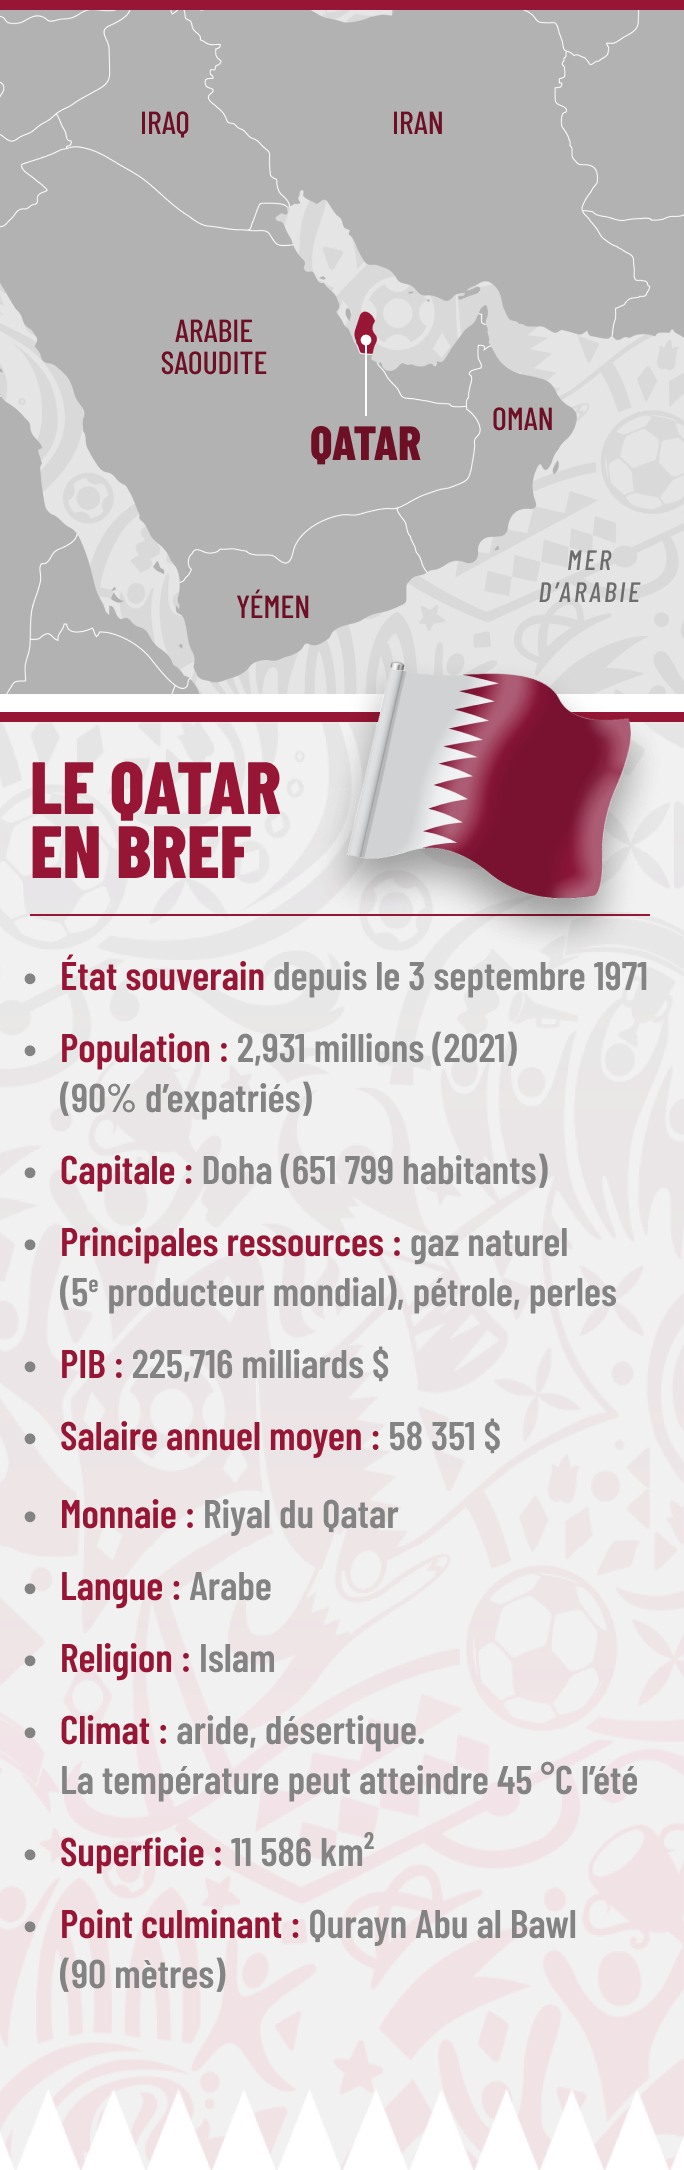 La Coupe du monde au Qatar, entre football et controverses – L'Express